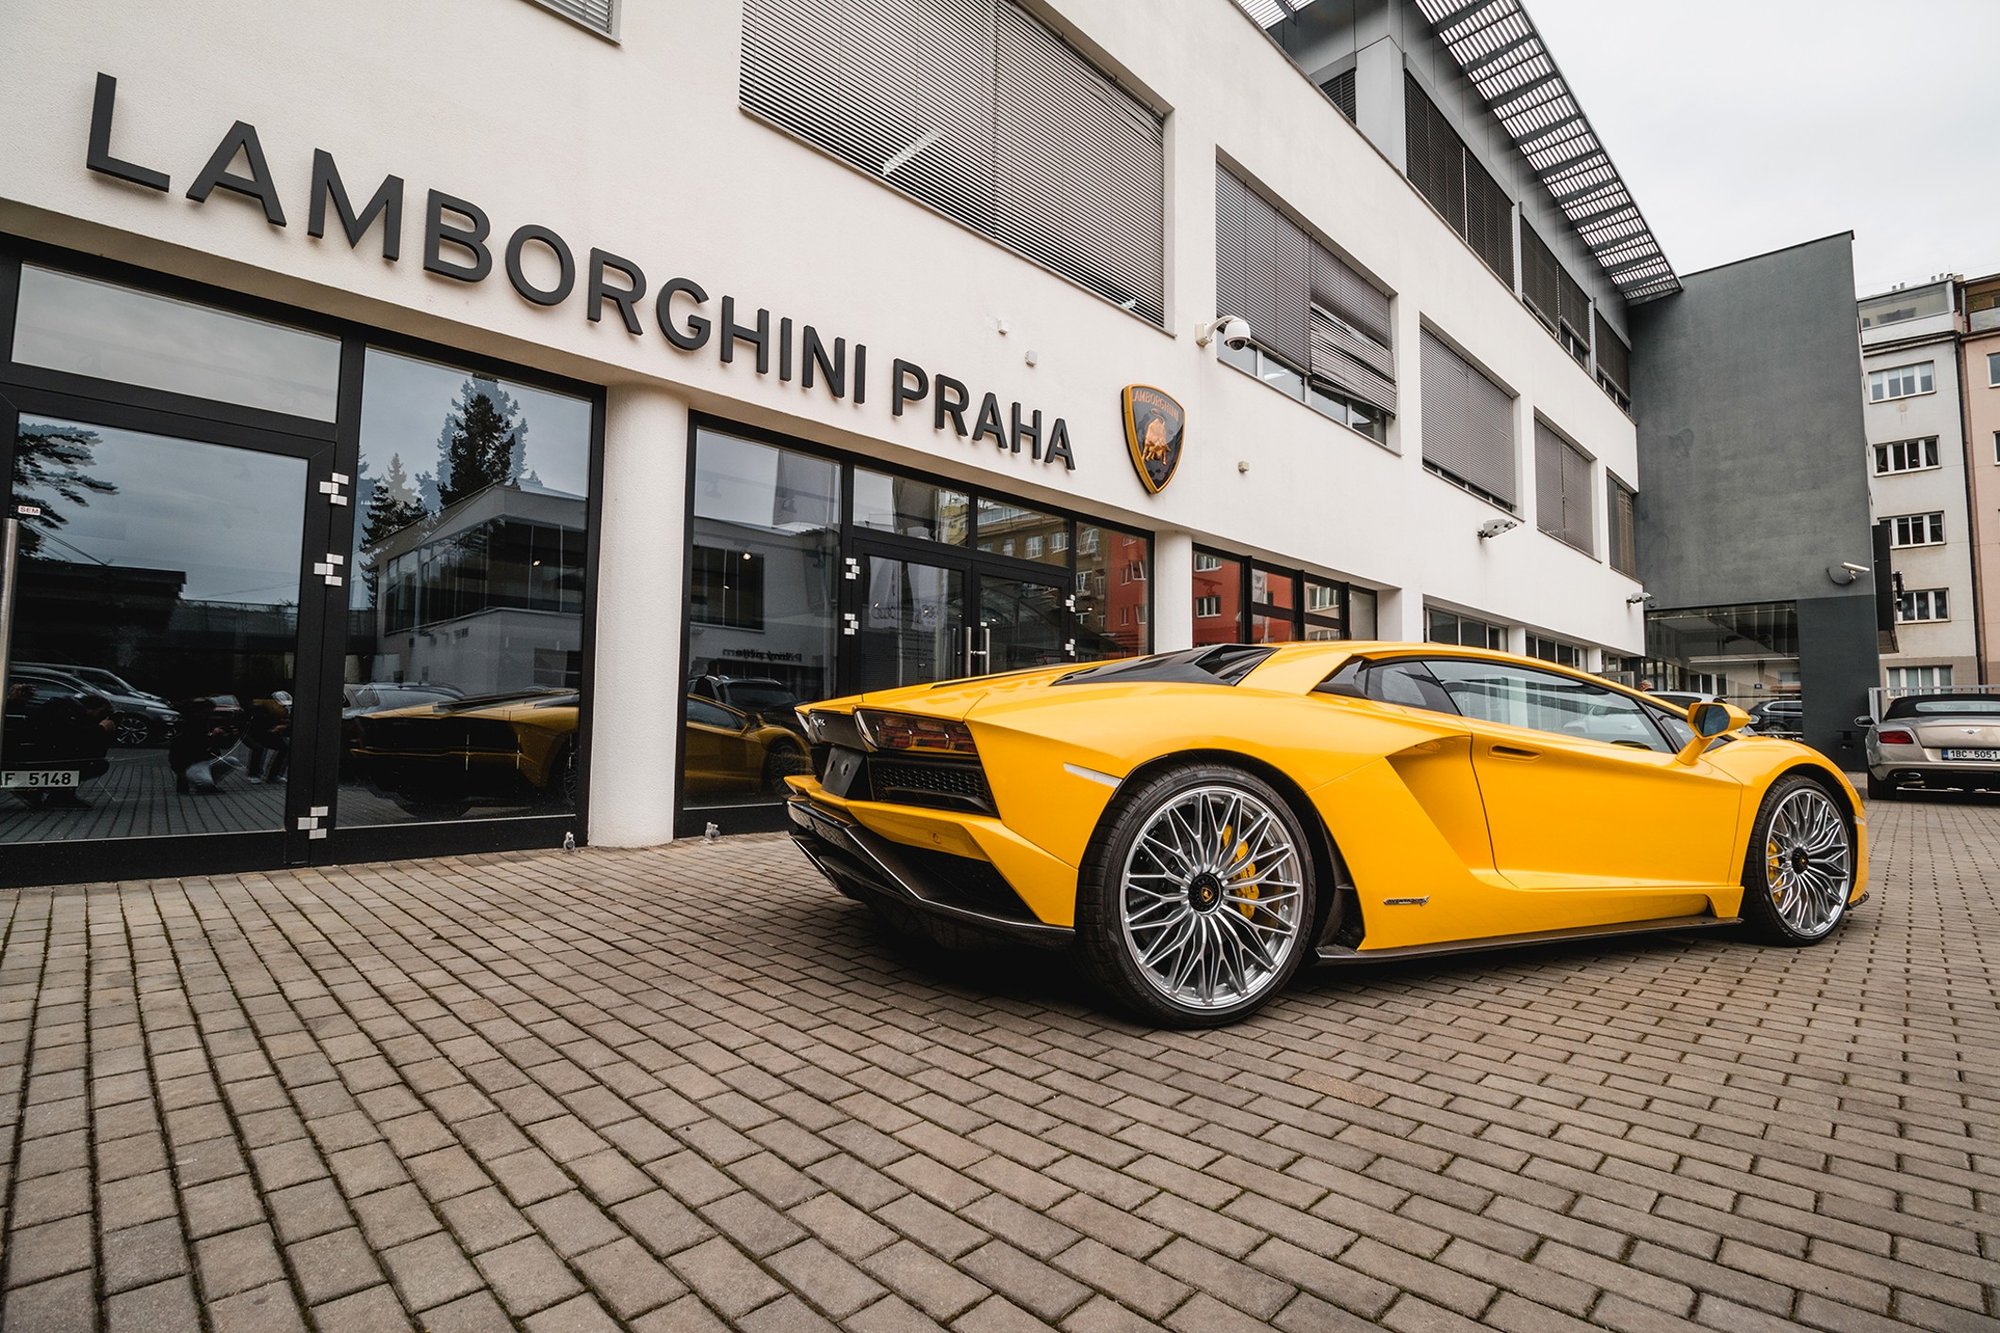 Lamborghini Aventador S má dvanáctiválec s výkonem 740 koní a točivým momentem 690 Nm, maximální rychlost je 350 km/h a cena představuje 7,6 milionu Kč bez daně